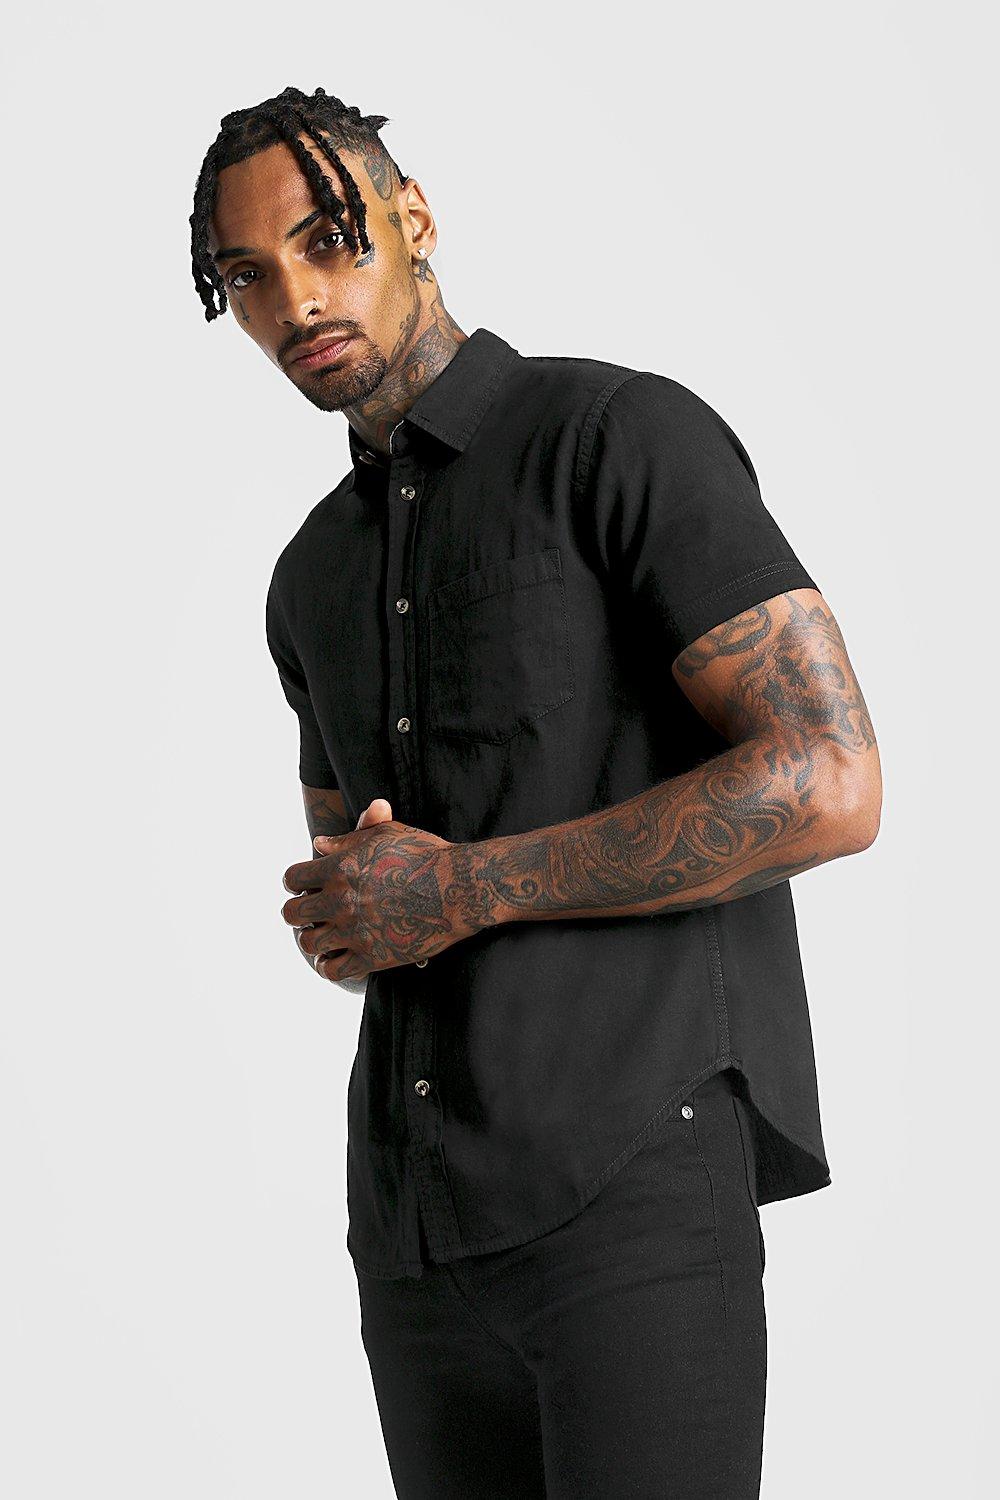 black denim short sleeve shirt